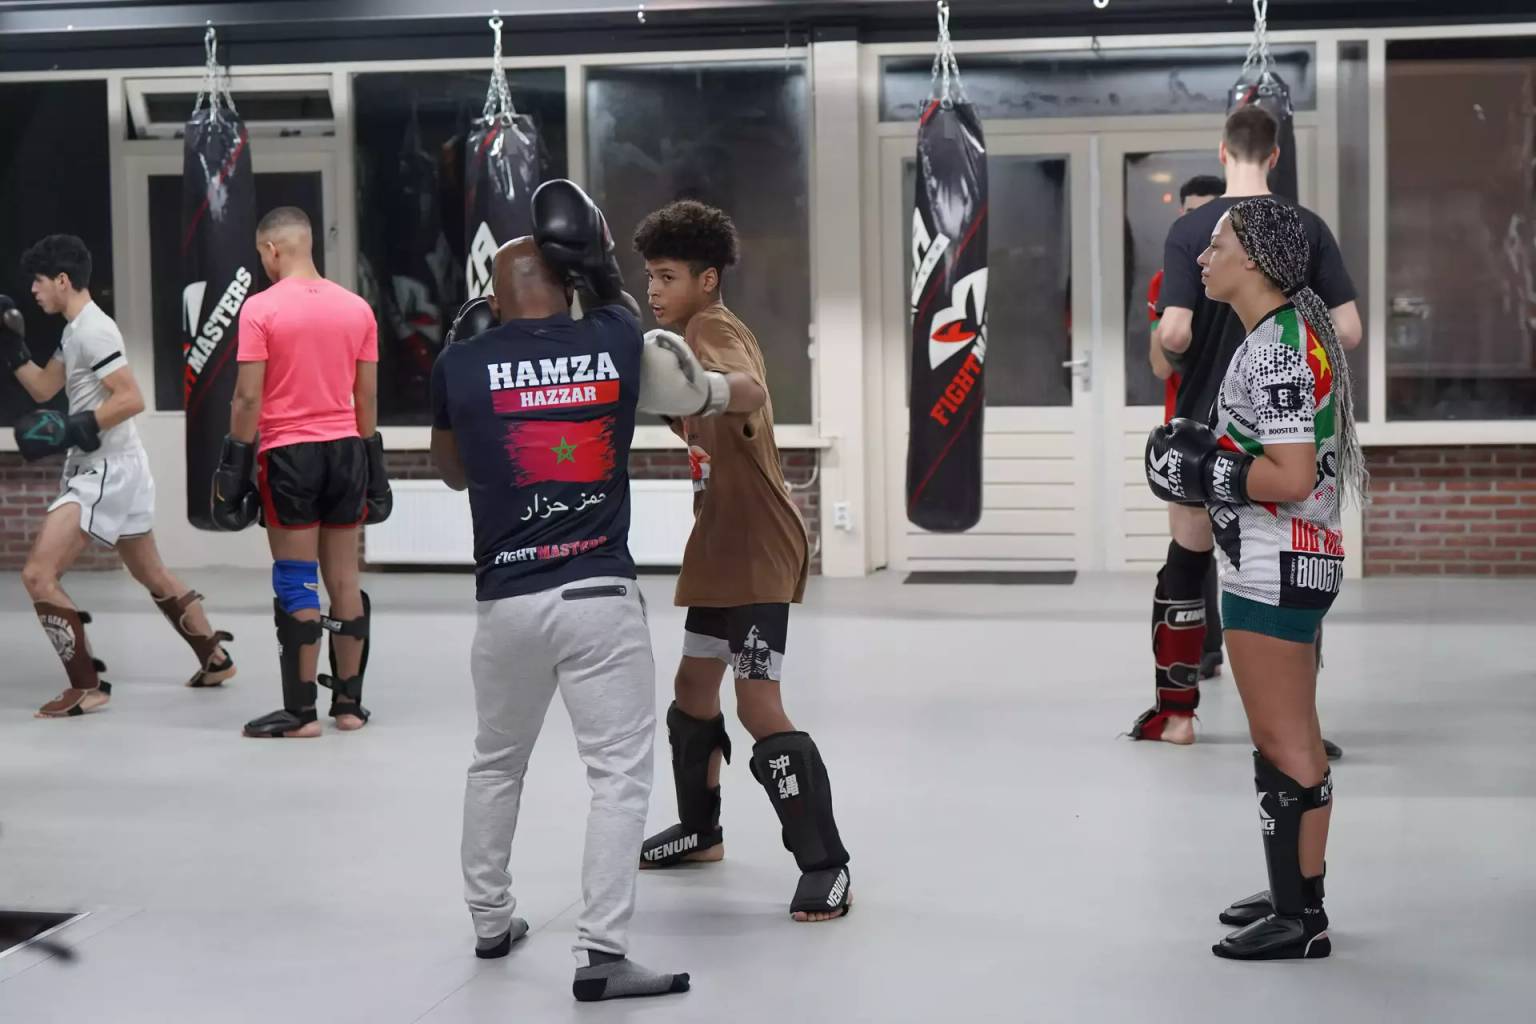 Een groep mensen die beschermende kleding dragen, neemt deel aan een kickbokstraining in sportschool Fightmasters, waarbij twee individuen op de voorgrond stoten oefenen en anderen op de achtergrond sparren.